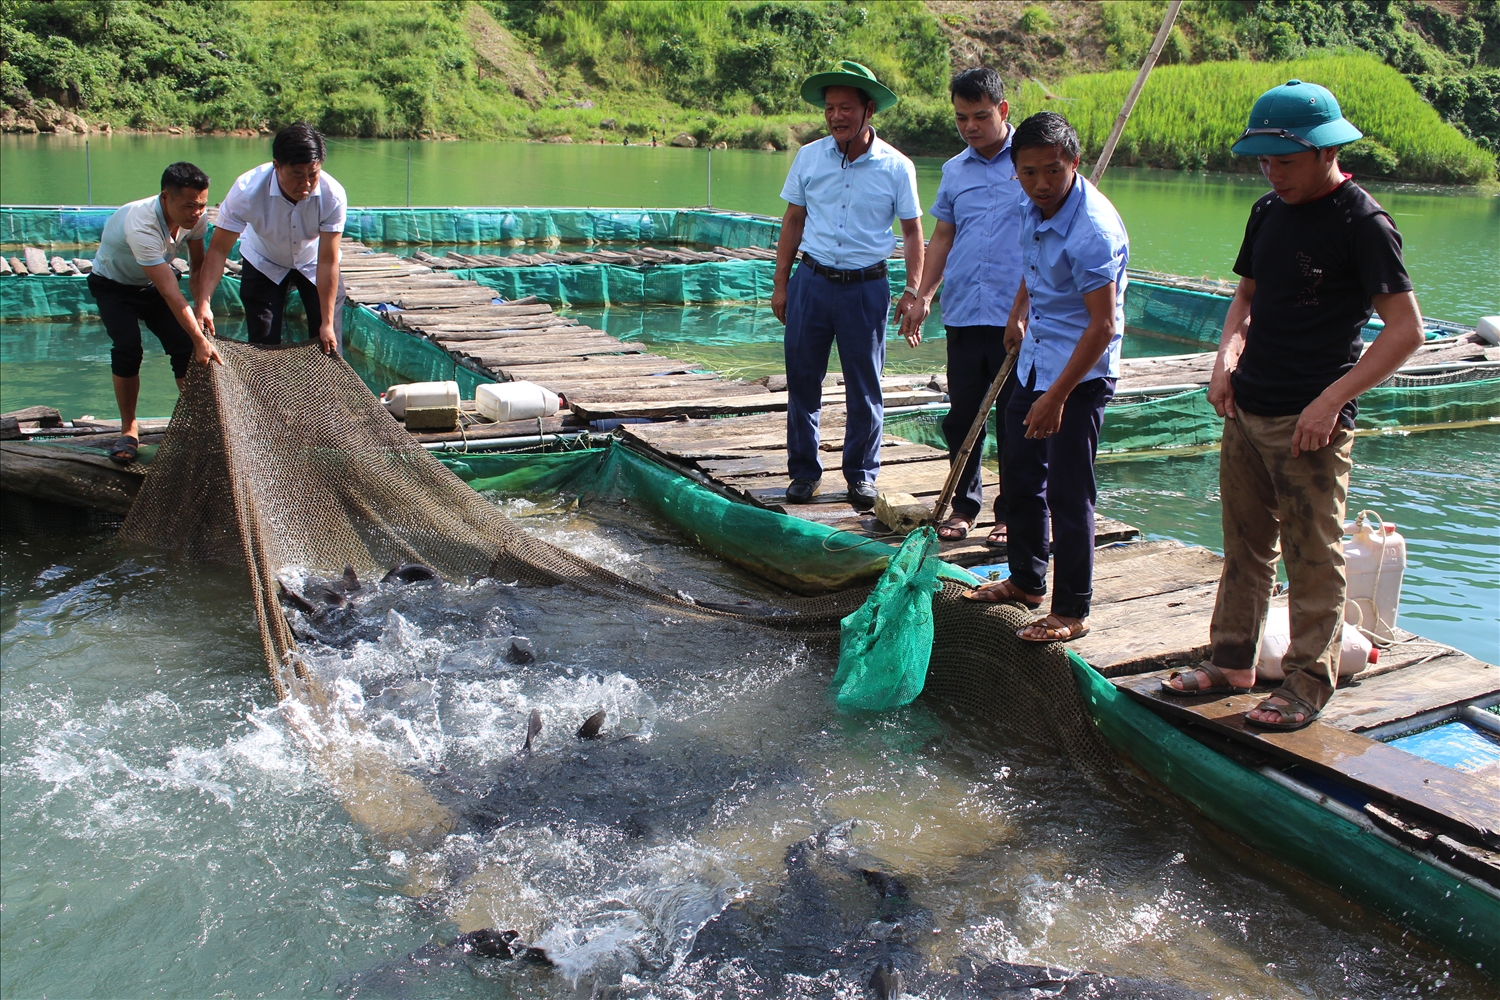 Ngay từ khu vực bến thuyền trên đường đến hẻm Phong Lưu, Hợp tác xã Du lịch – Dịch vụ nuôi thủy sản Châu Kiệt nuôi cá lồng phục vụ nhu cầu ăn uống của du khách